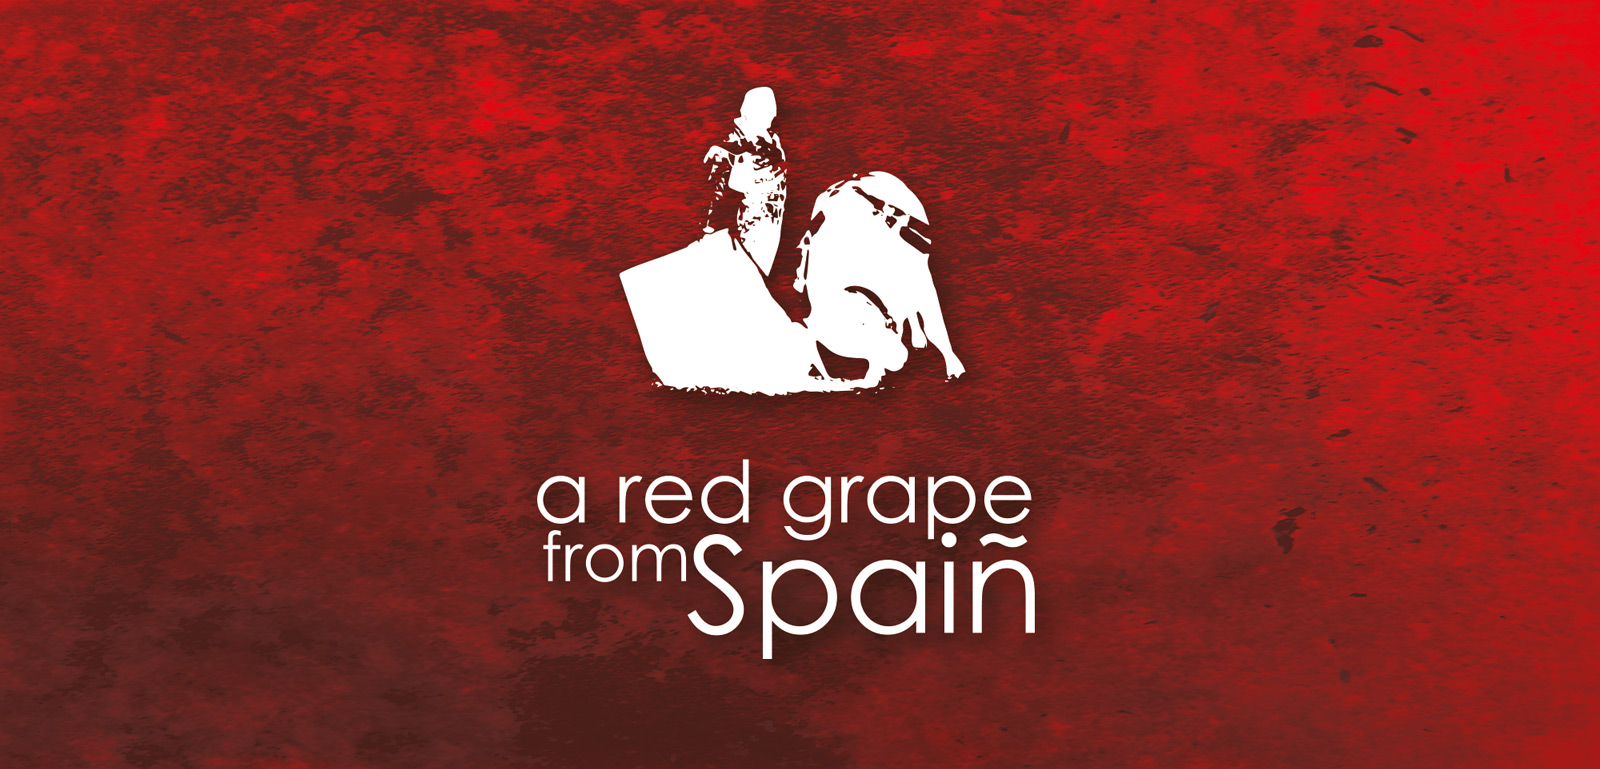 Diseño gráfico y creativo de etiquetas y packaging de vino para A RED GRAPE FROM SPAIN